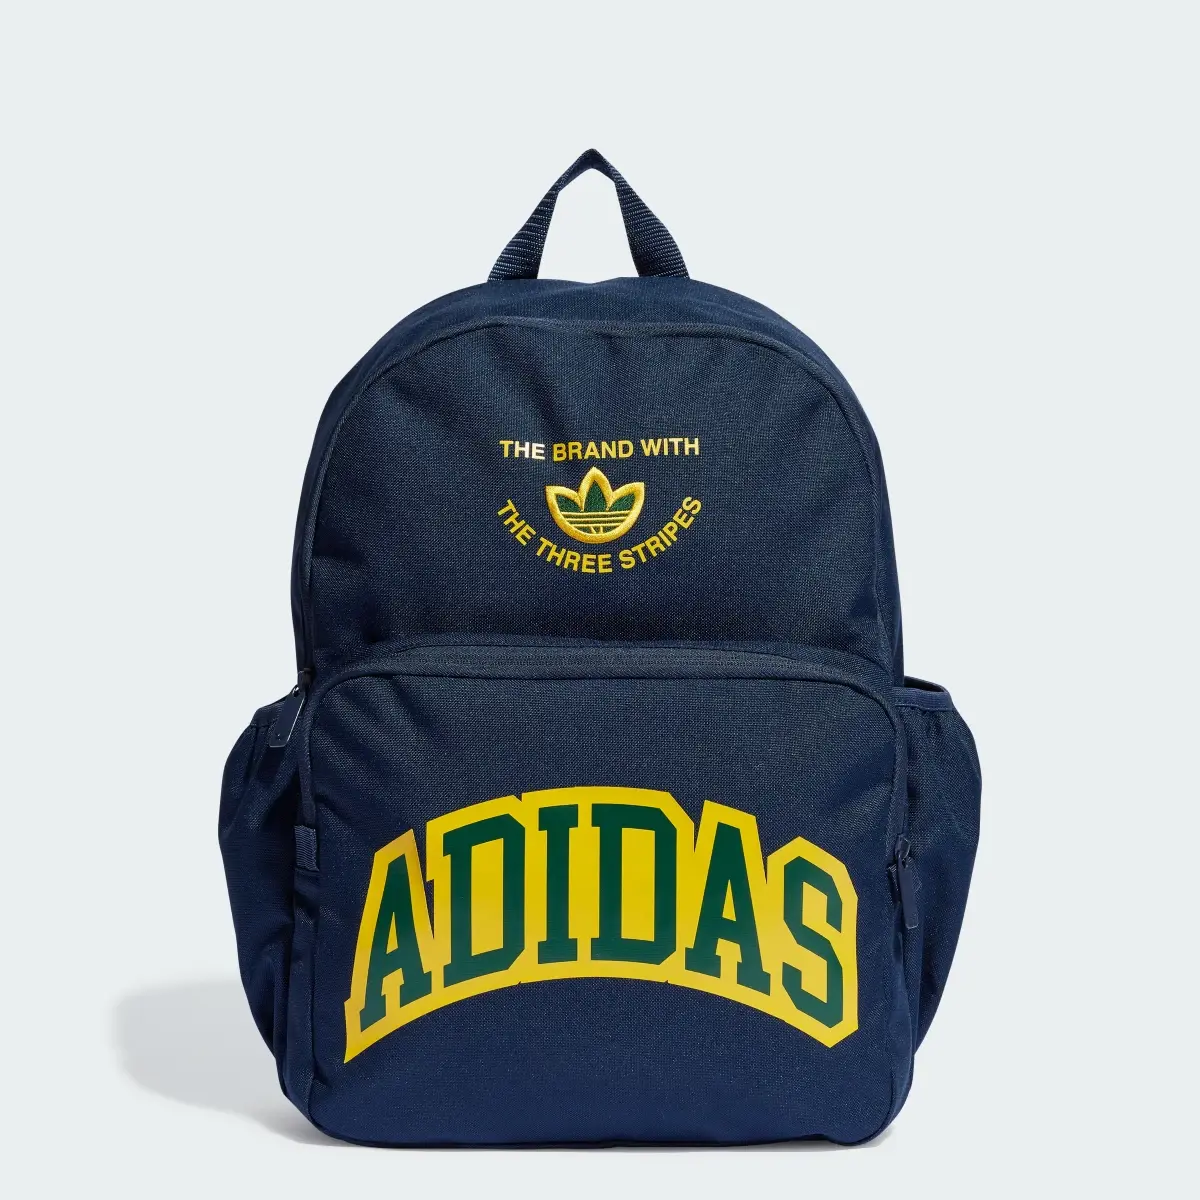 Adidas VRST Backpack. 1